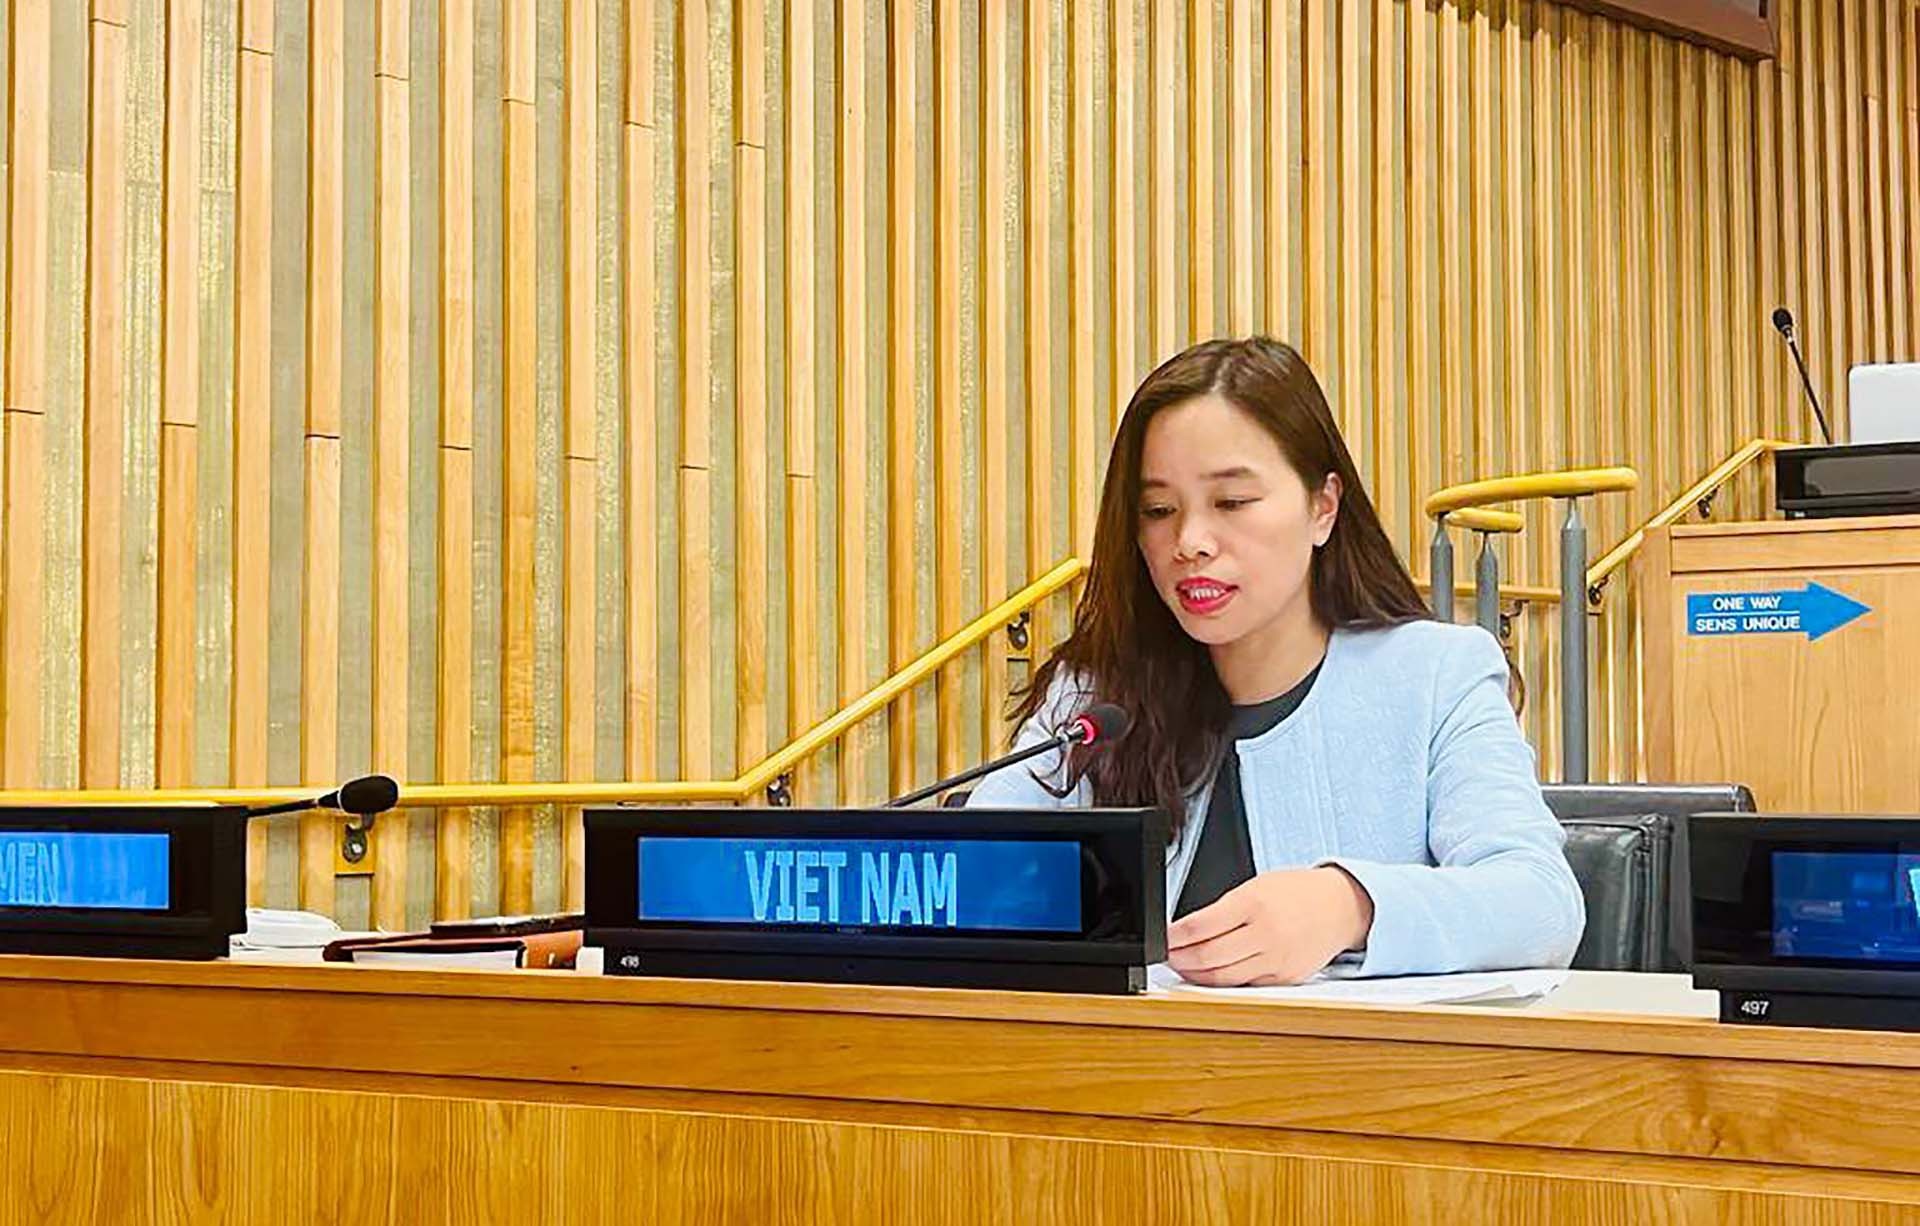 Việt Nam kêu gọi cách tiếp cận toàn diện để giải quyết các thách thức liên quan đến biến đổi khí hậu, ô nhiễm môi trường